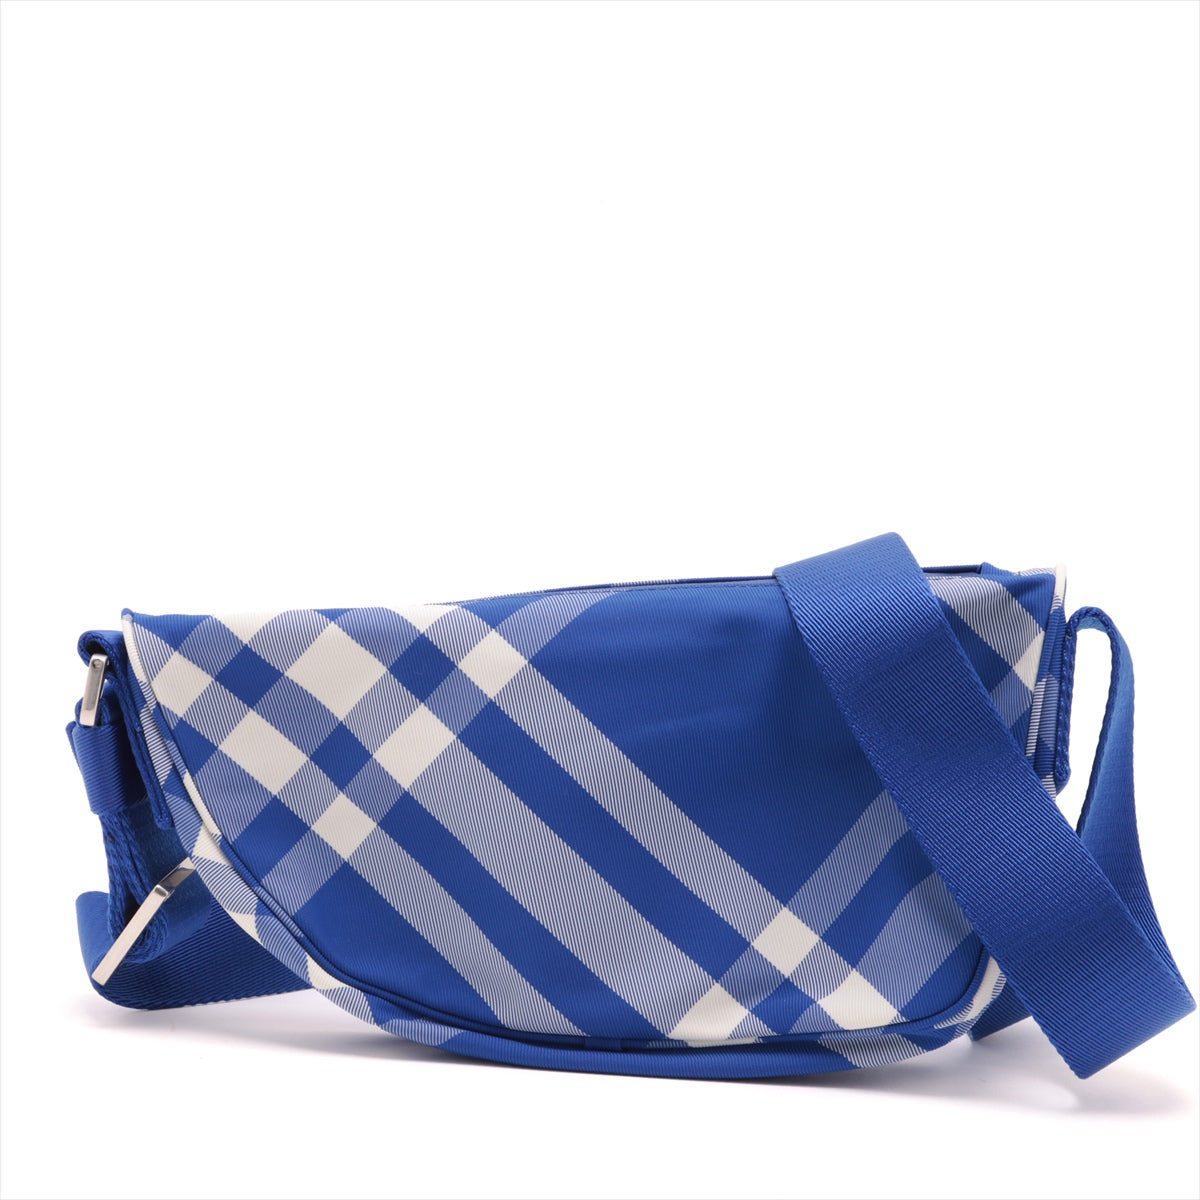 Burberry Nylon Sling backpack Blue